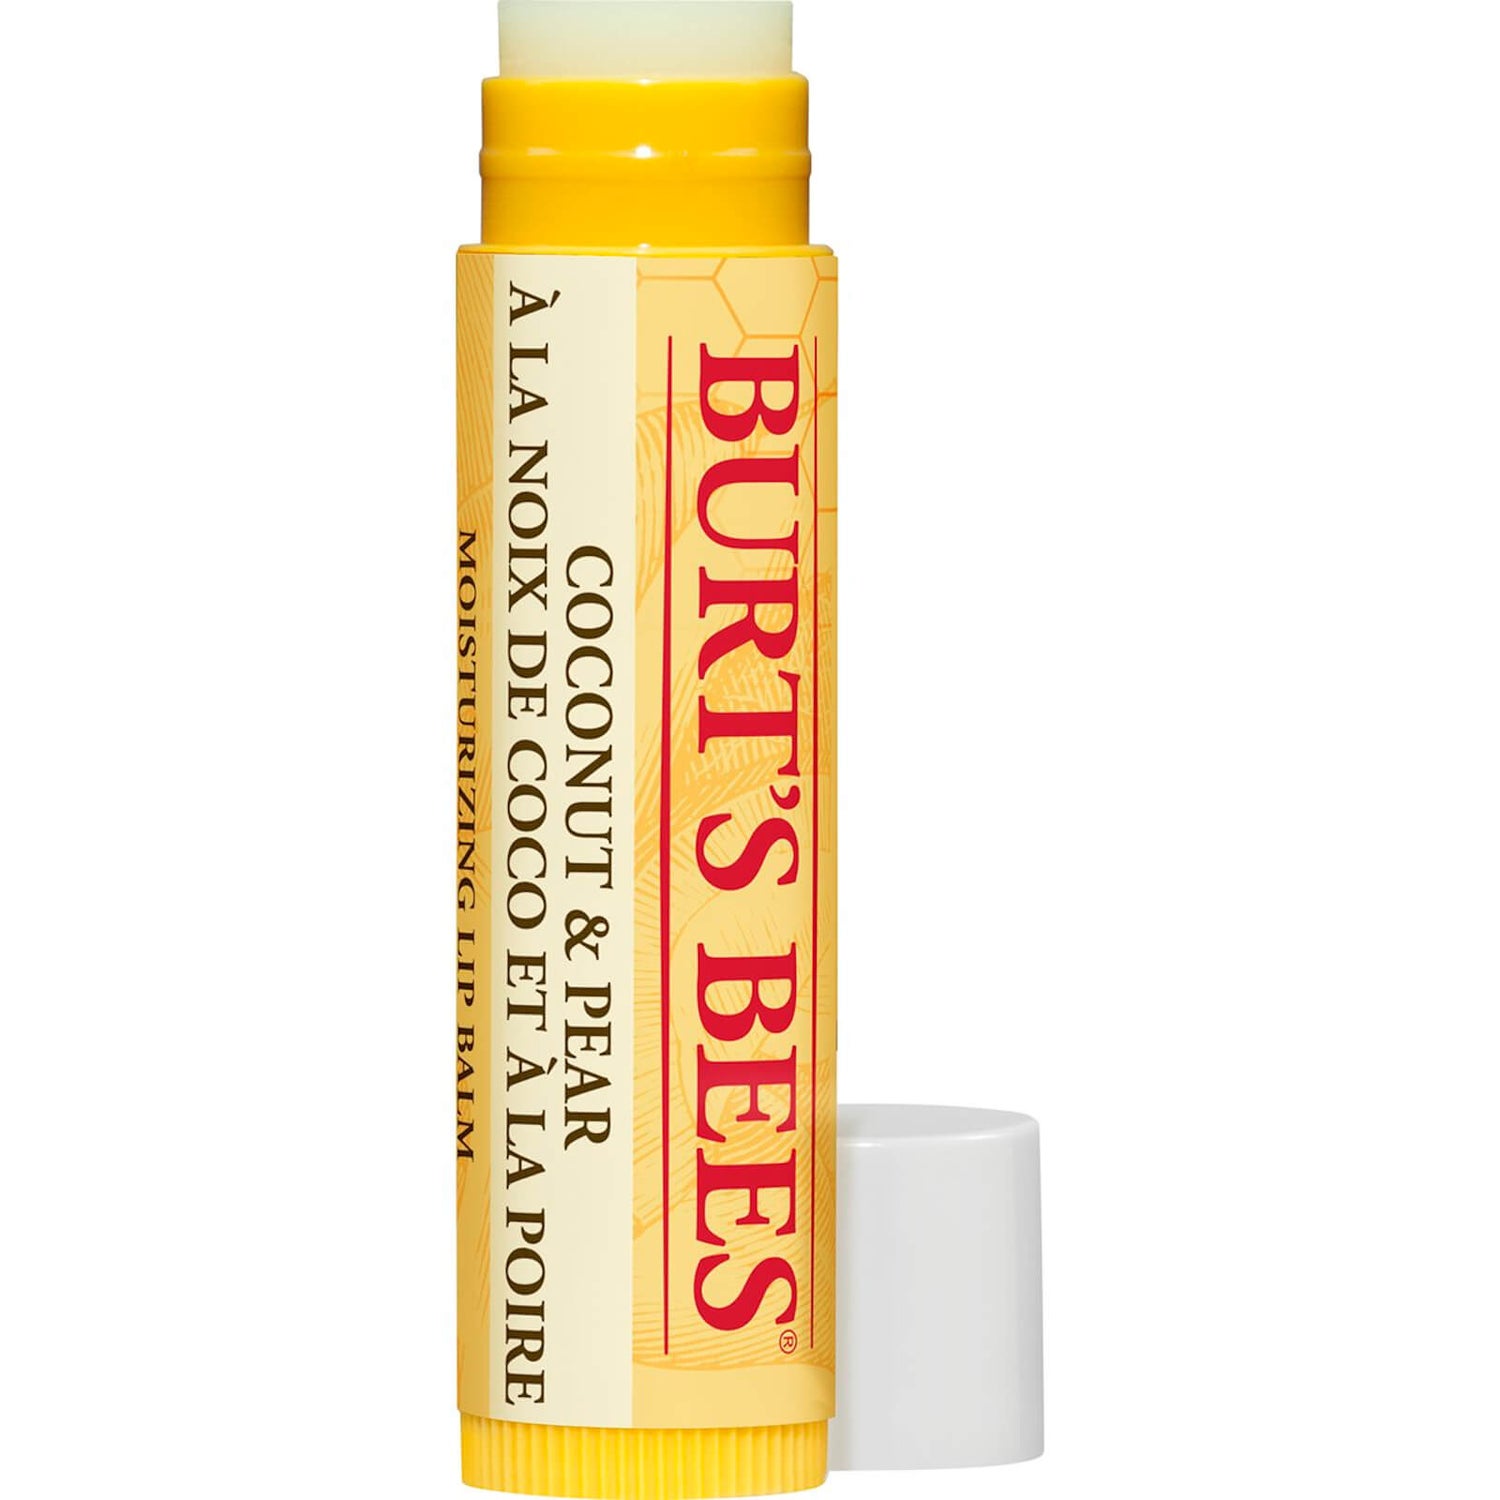 Burt's Bees Lip Balm - Pepino de menta y cera de abejas